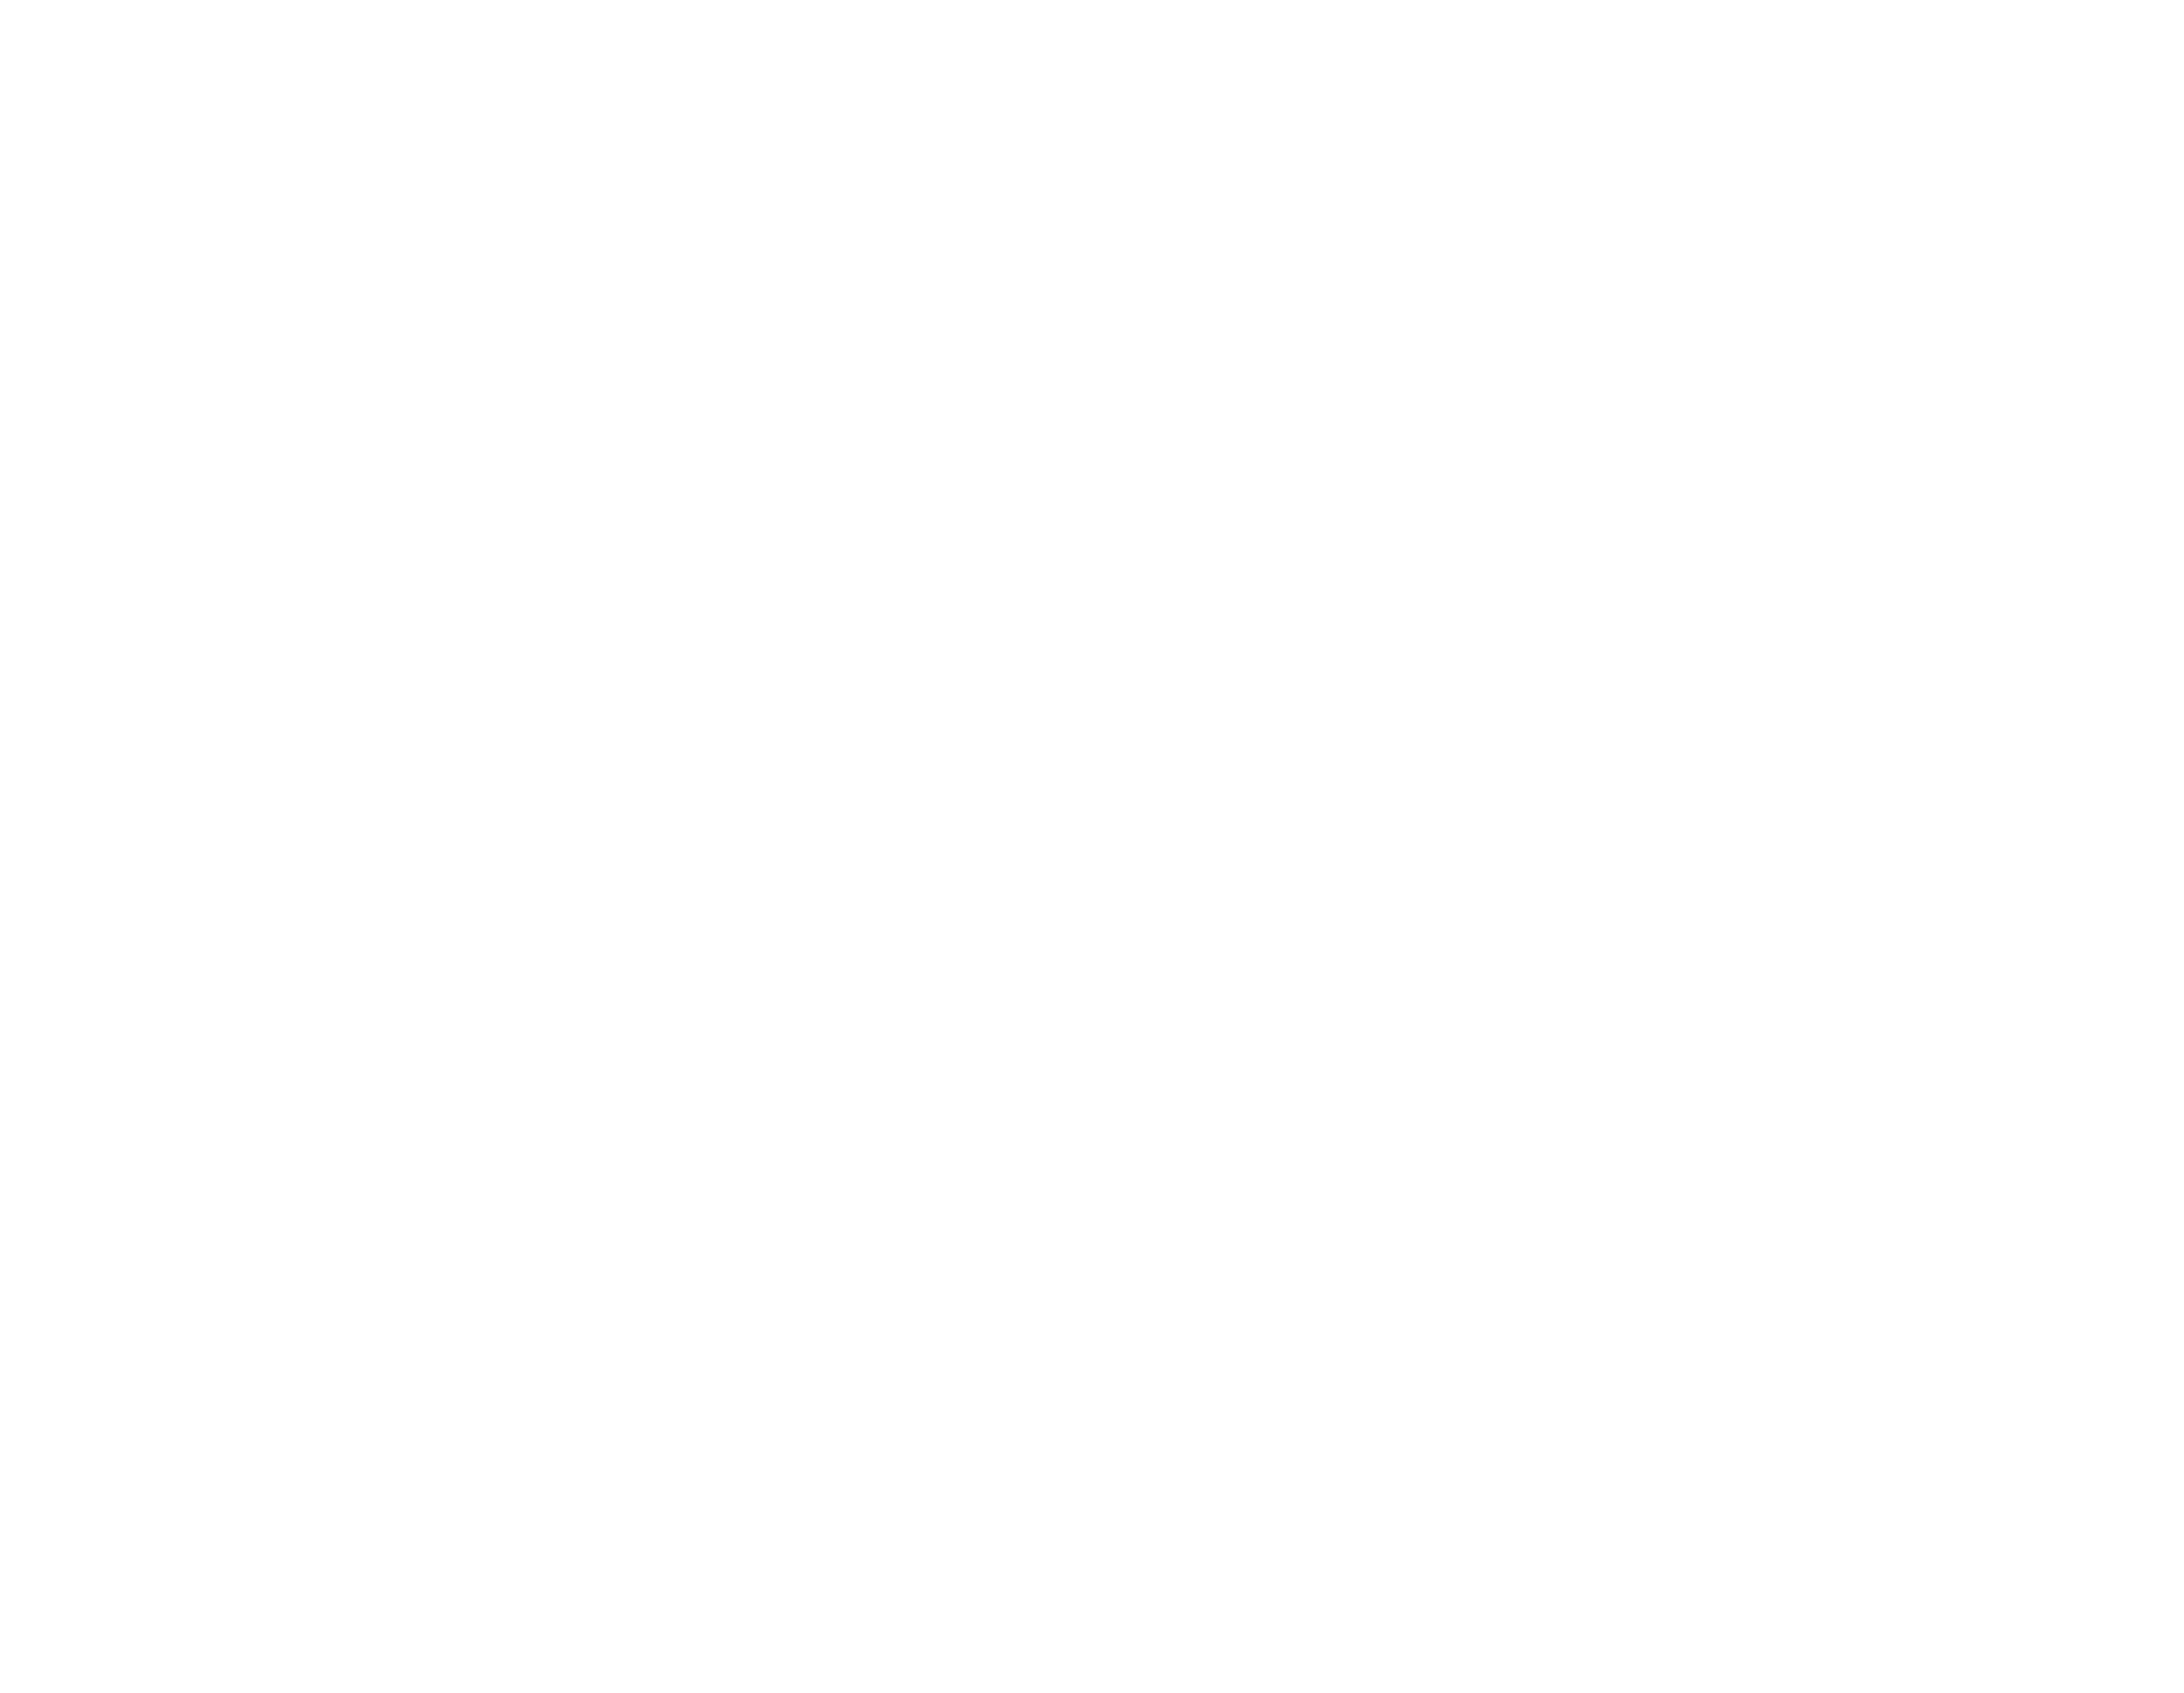 ICANN65 | Policy Forum Logo